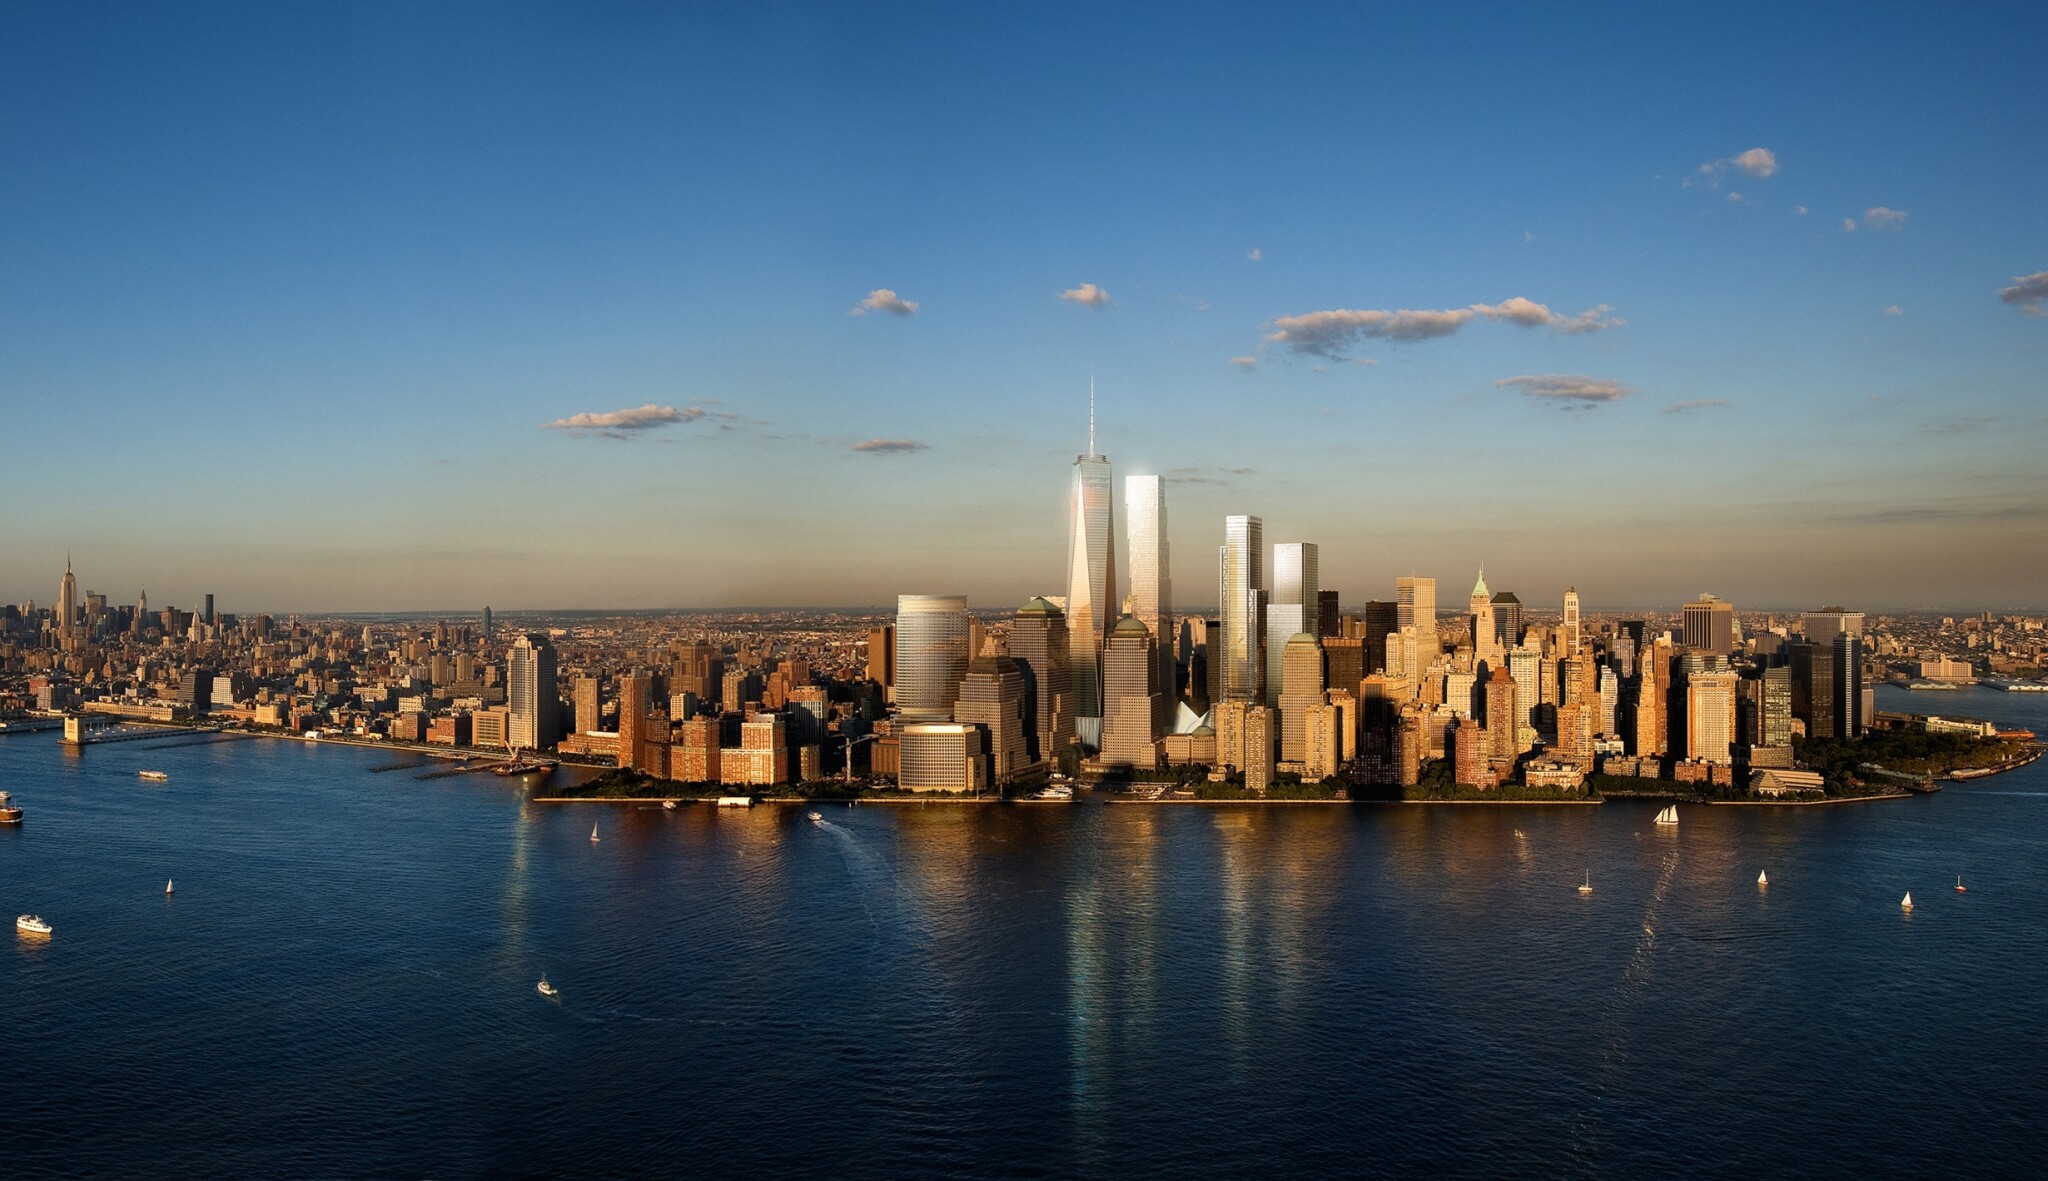 Dvacet let po 11. září stojí na místě Dvojčat stavby za miliardy dolarů. Podívejte se jaké